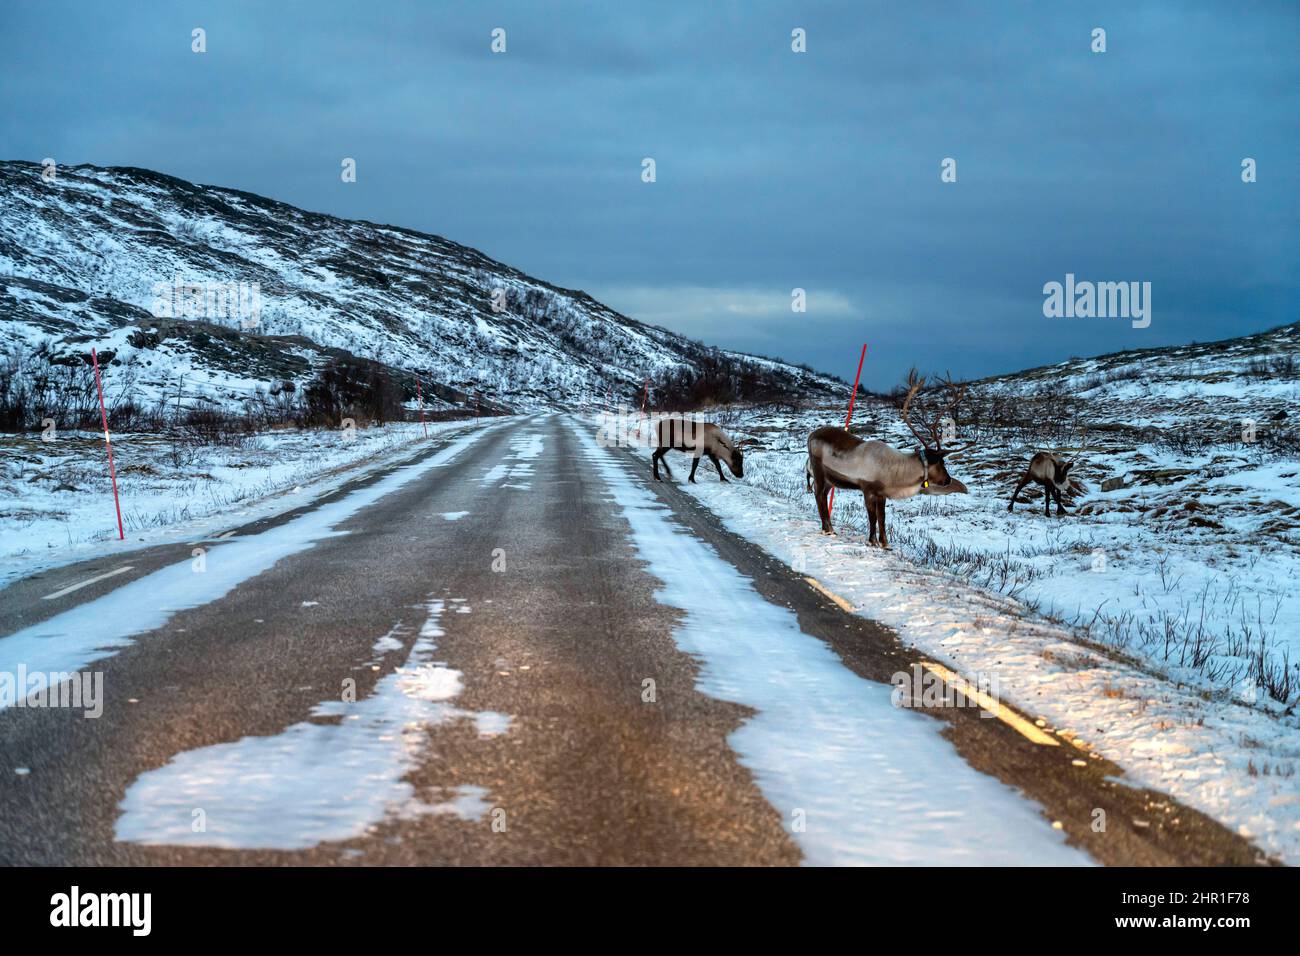 Renne européen, caribou européen (Rangifer tarandus tarandus), renne sur le bord de la route dans la neige, Norvège, Troms, Kvalaeya Banque D'Images